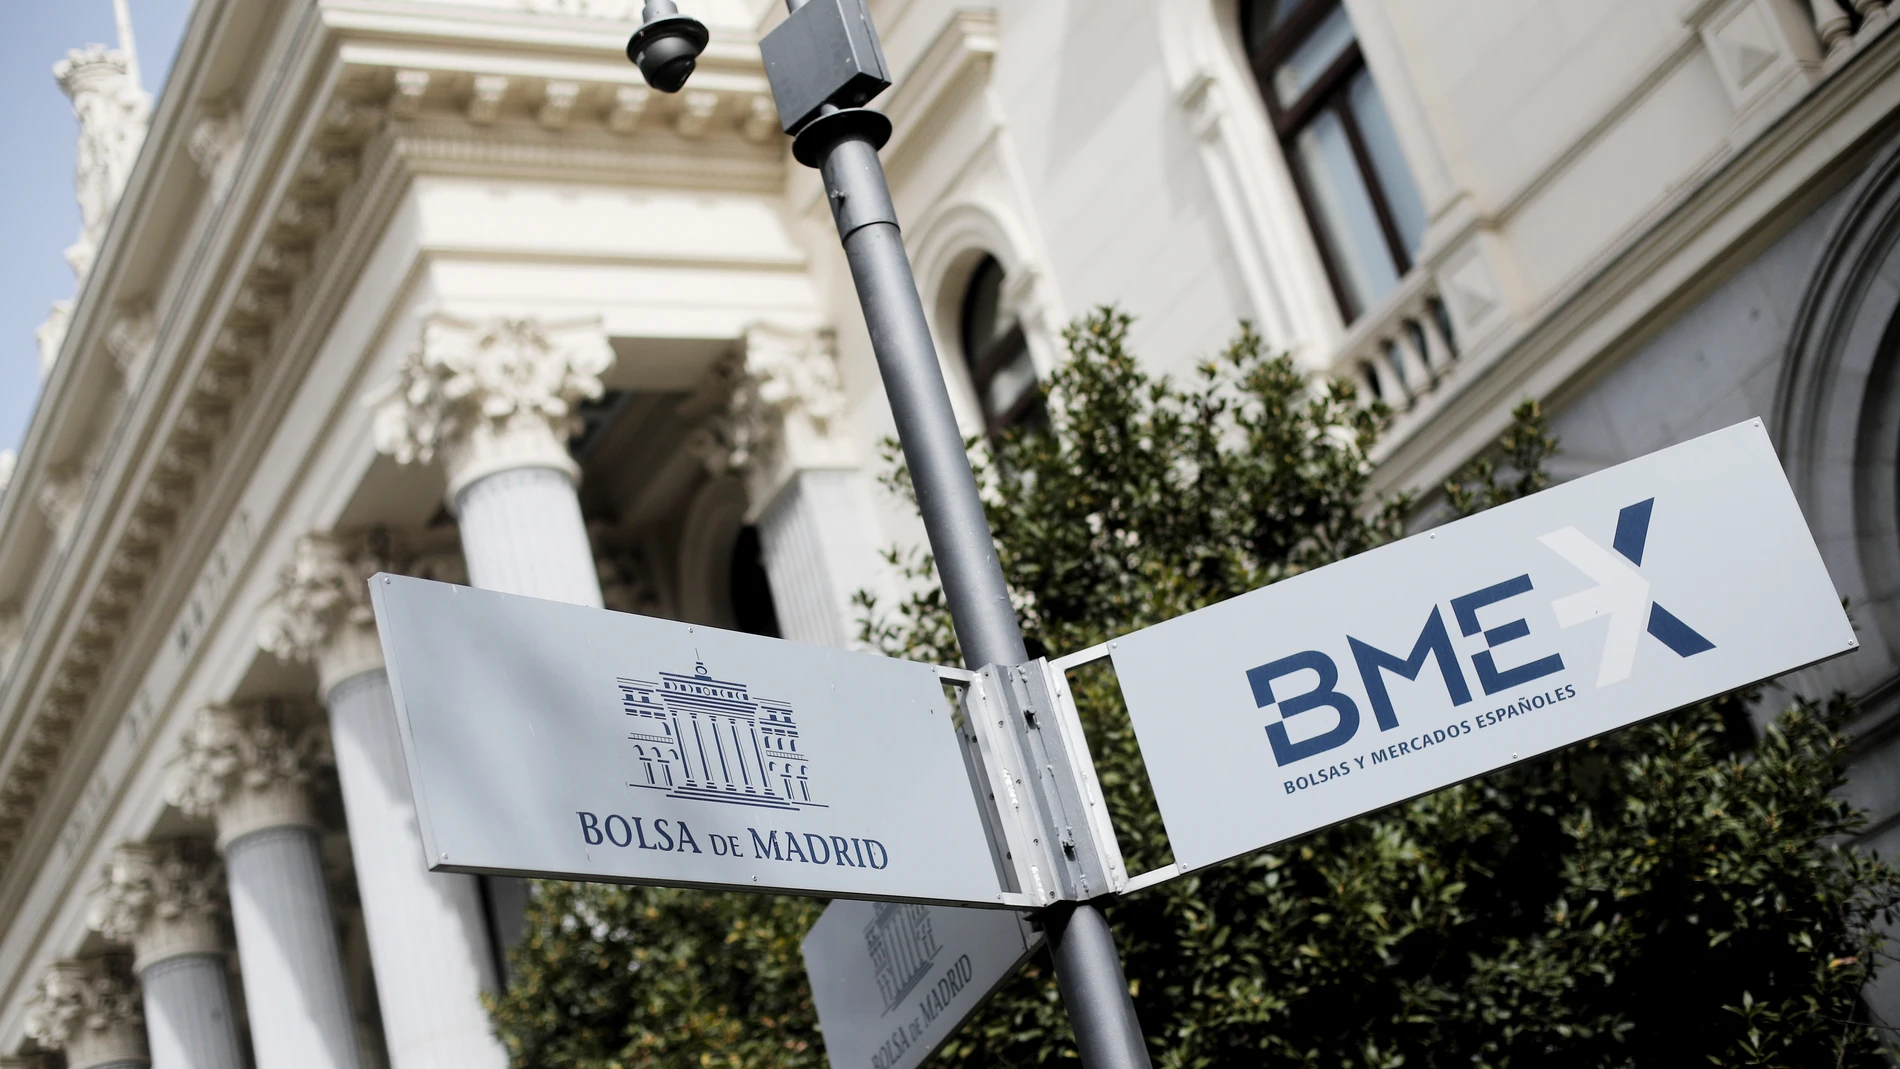 El edificio de la Bolsa en Madrid aparece hoy cerrado al público, después de que el Ibex 35 haya rebotado por la intervención del BCE